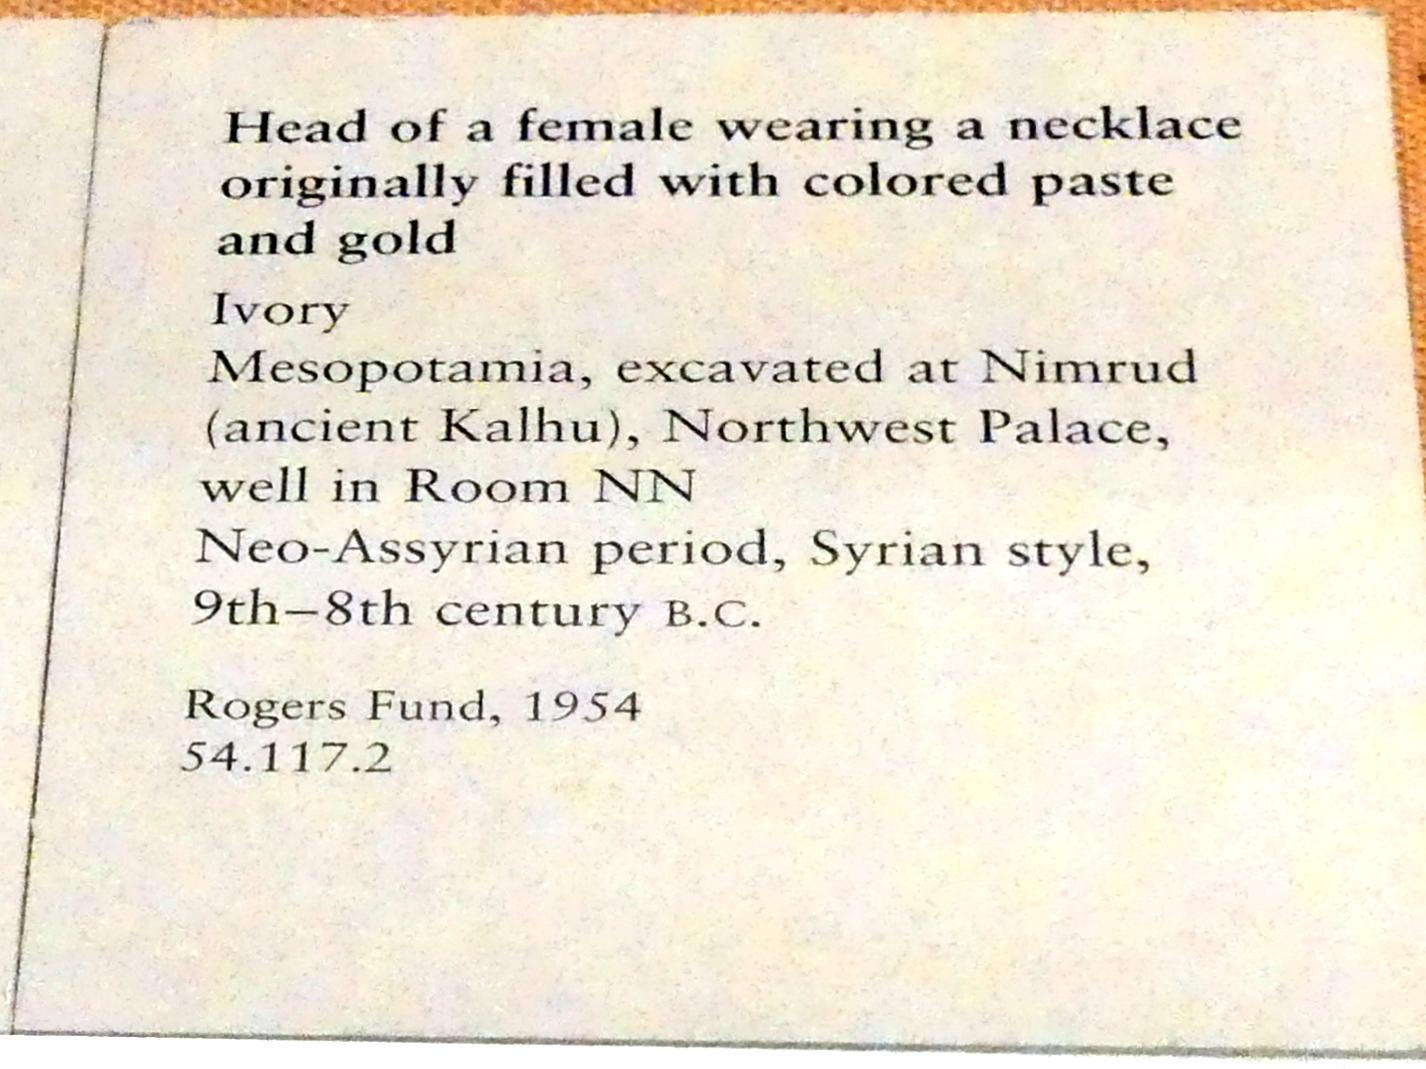 Frauenkopf mit einer Halskette, Neuassyrisches Großreich, 1500 - 600 v. Chr., 900 - 700 v. Chr., Bild 2/2